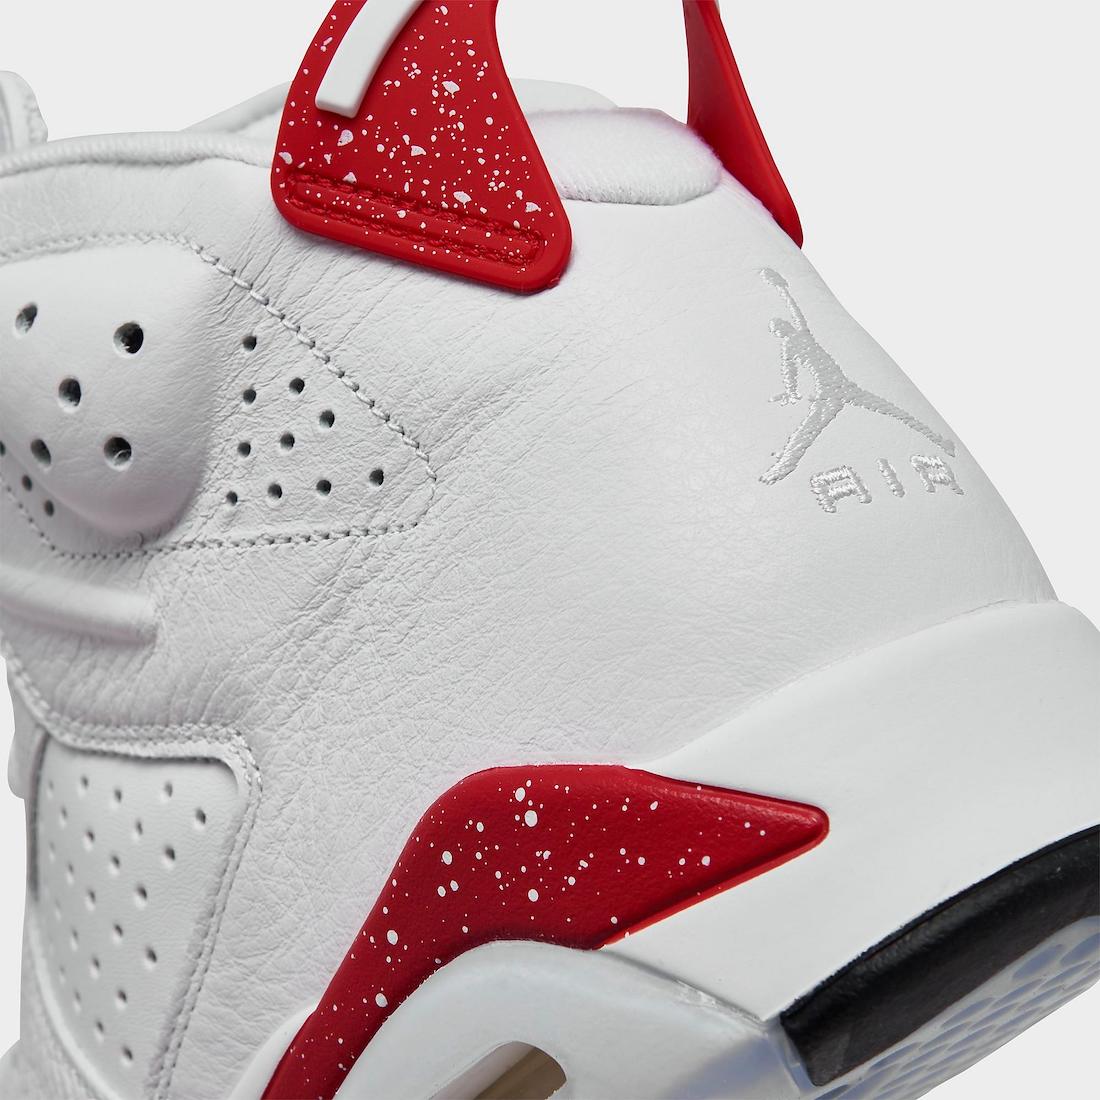 Air Jordan 6 Red Oreo Release Date CT8529-162 